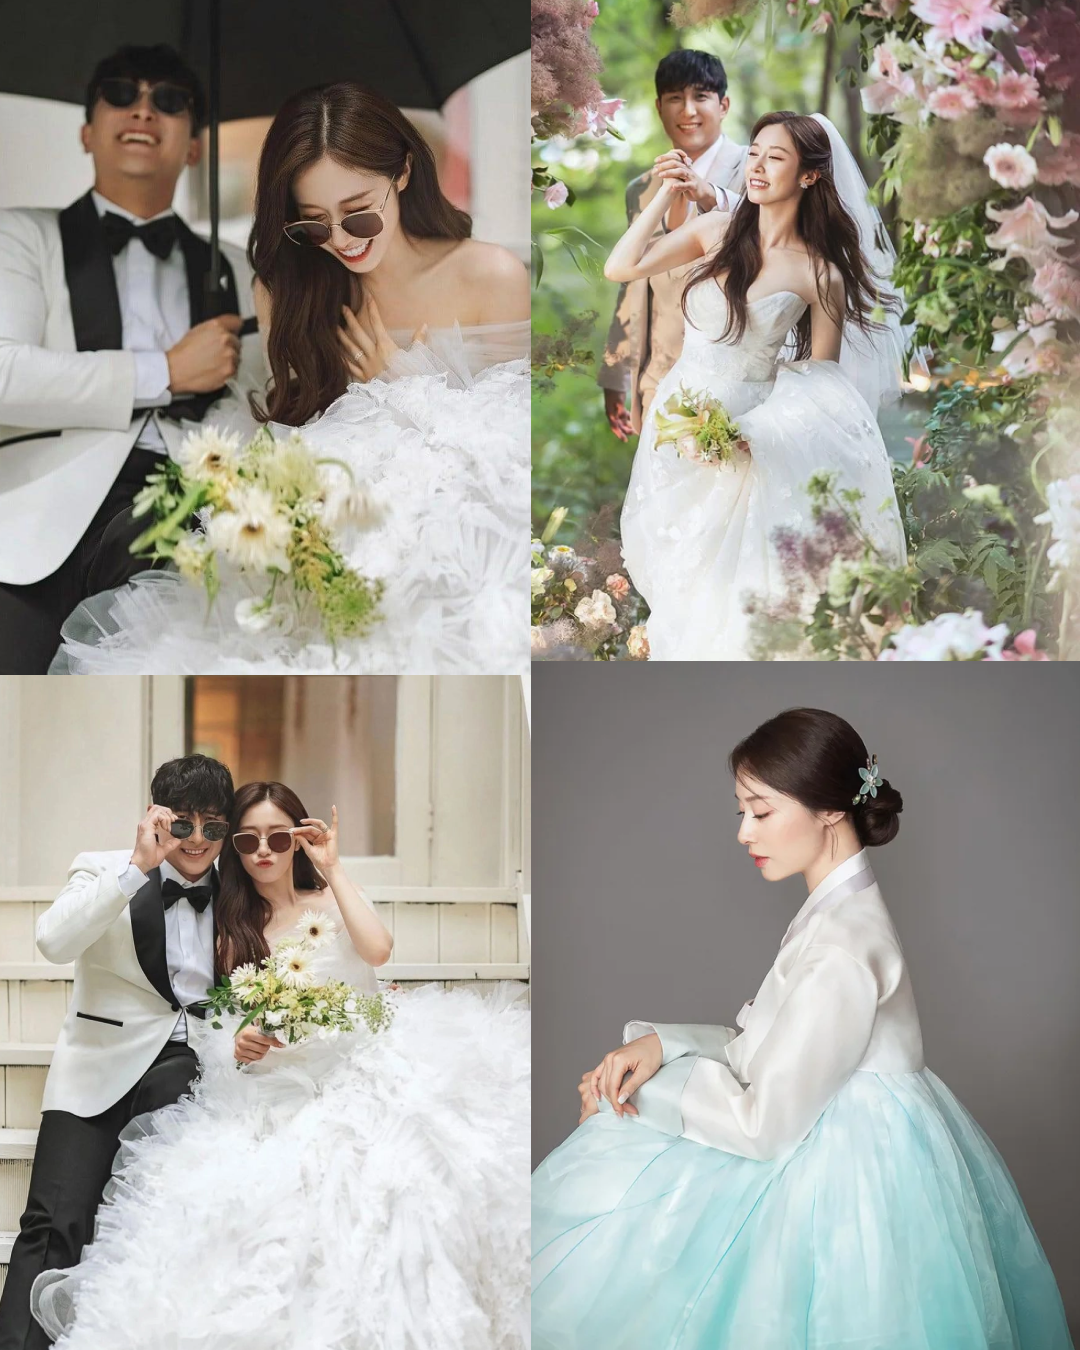 Váy cưới Jiyeon: Sắc trắng - tím sang trọng, thiết kế tối giản mà tôn body - Ảnh 5.